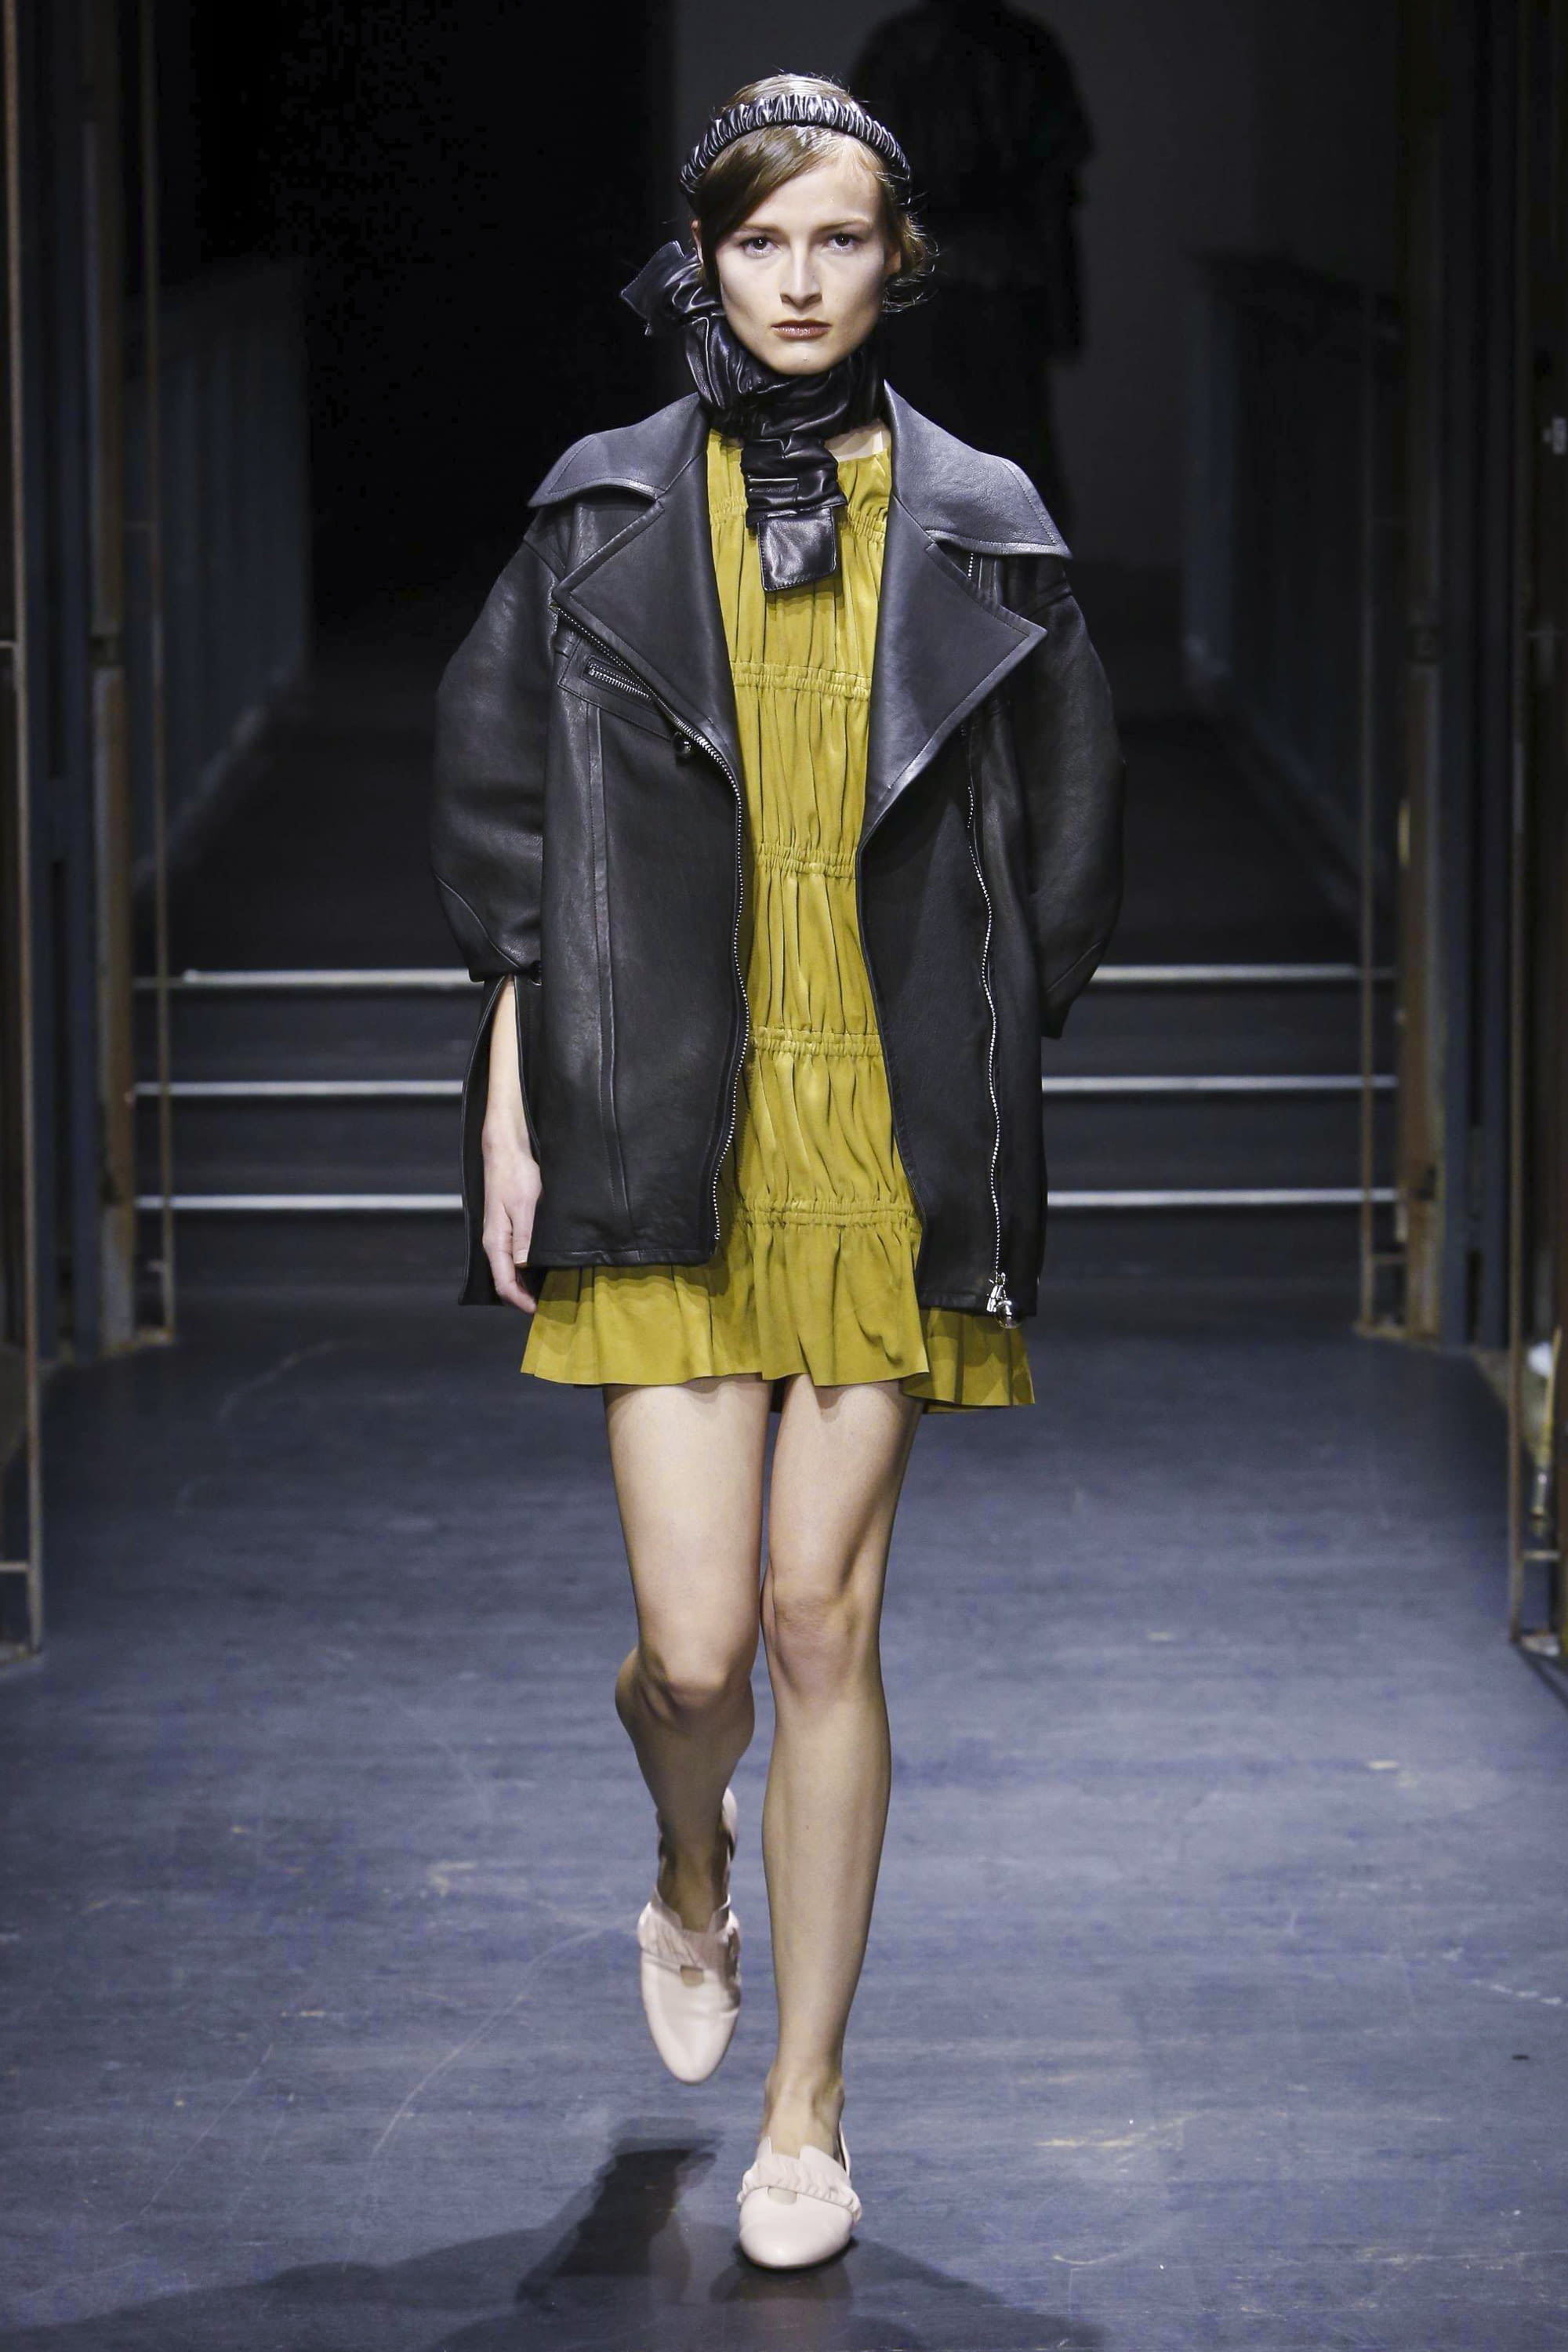 Chanel F/W 16 womenswear #14 - Tagwalk: The Fashion Search Engine